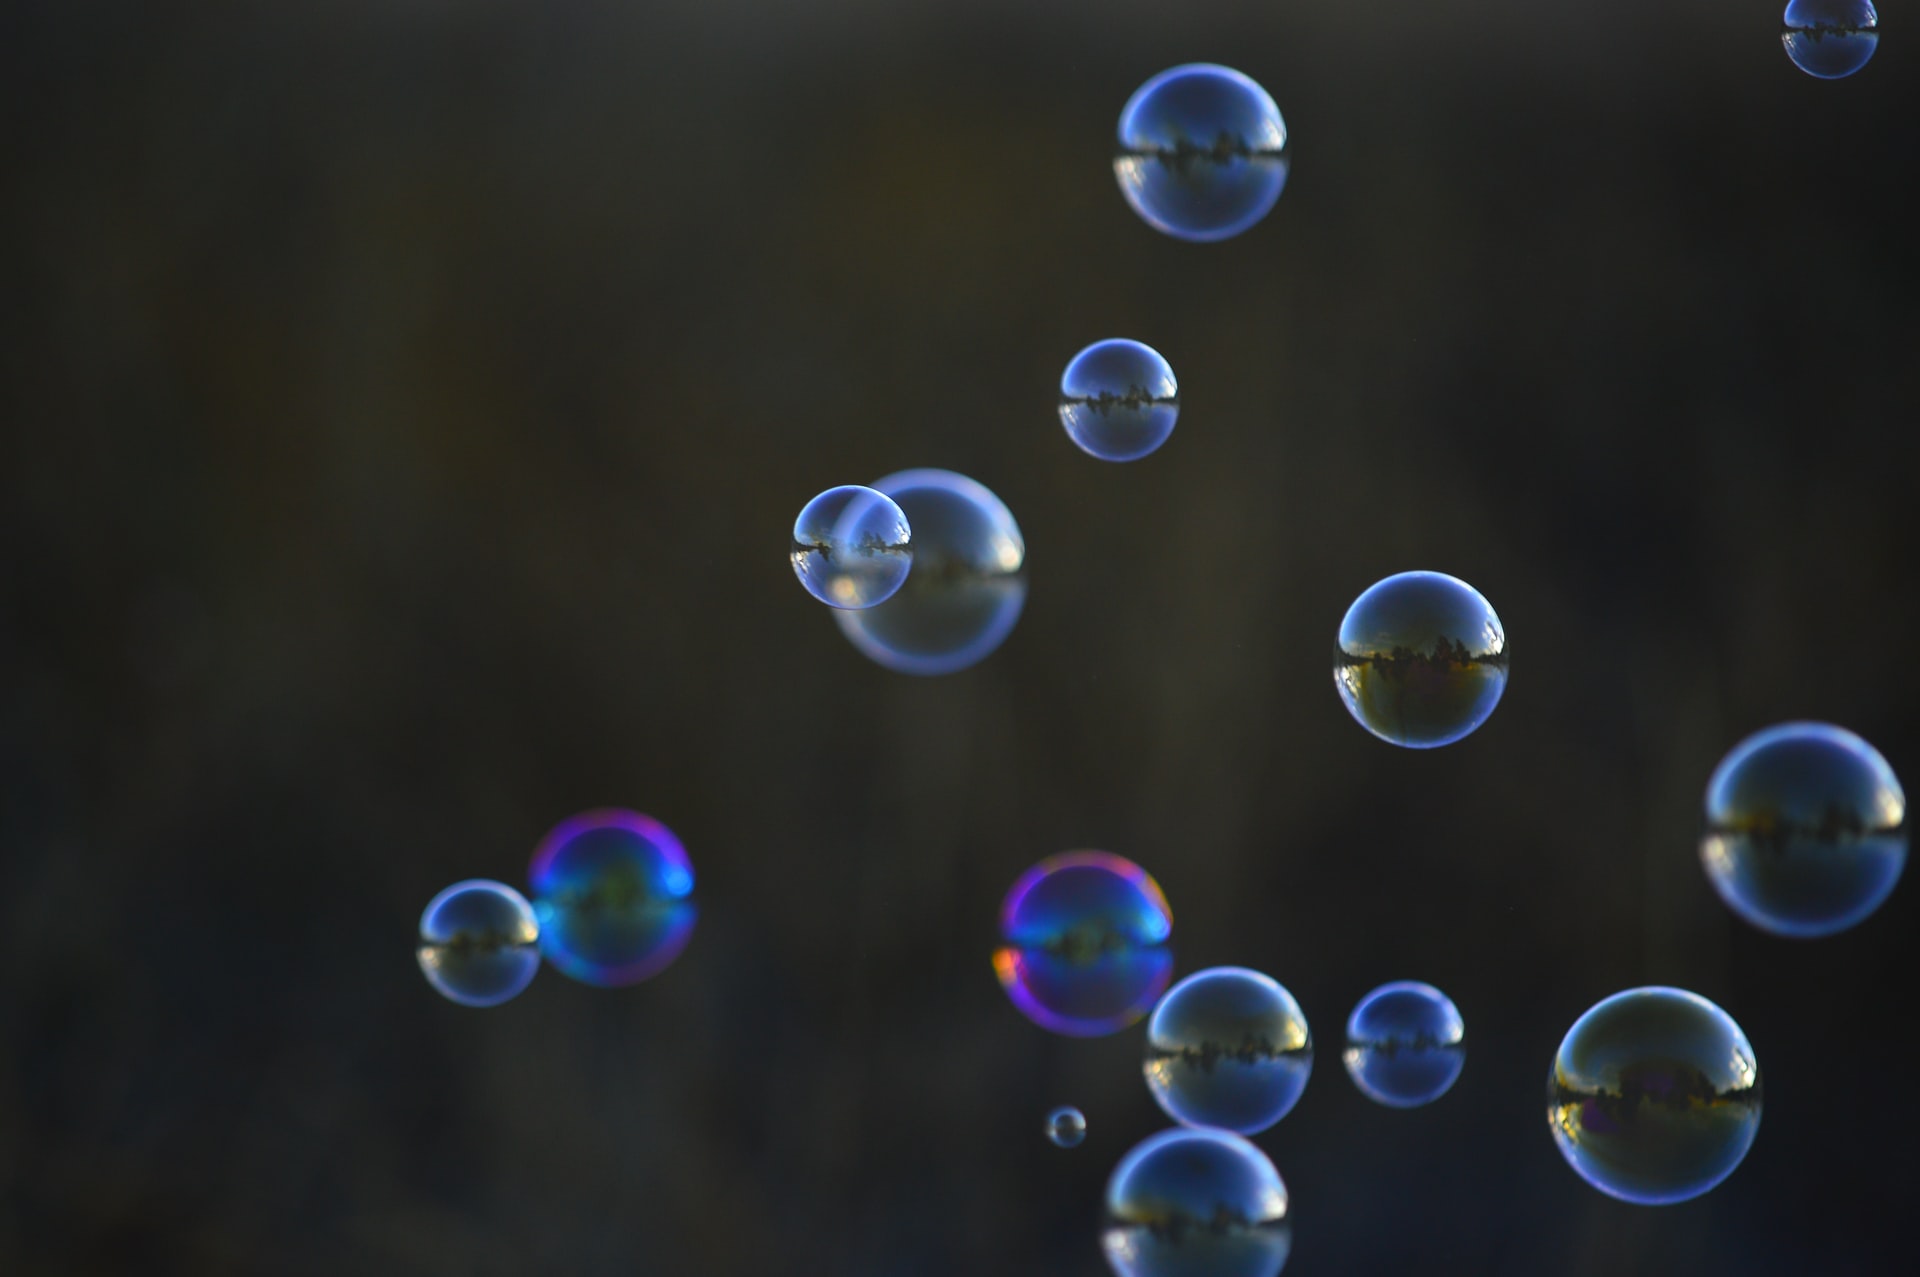 Ein Bild des Multiversums - eine dieser Blasen könnte unser Universum sein. Bild: Diana Orey auf unsplash